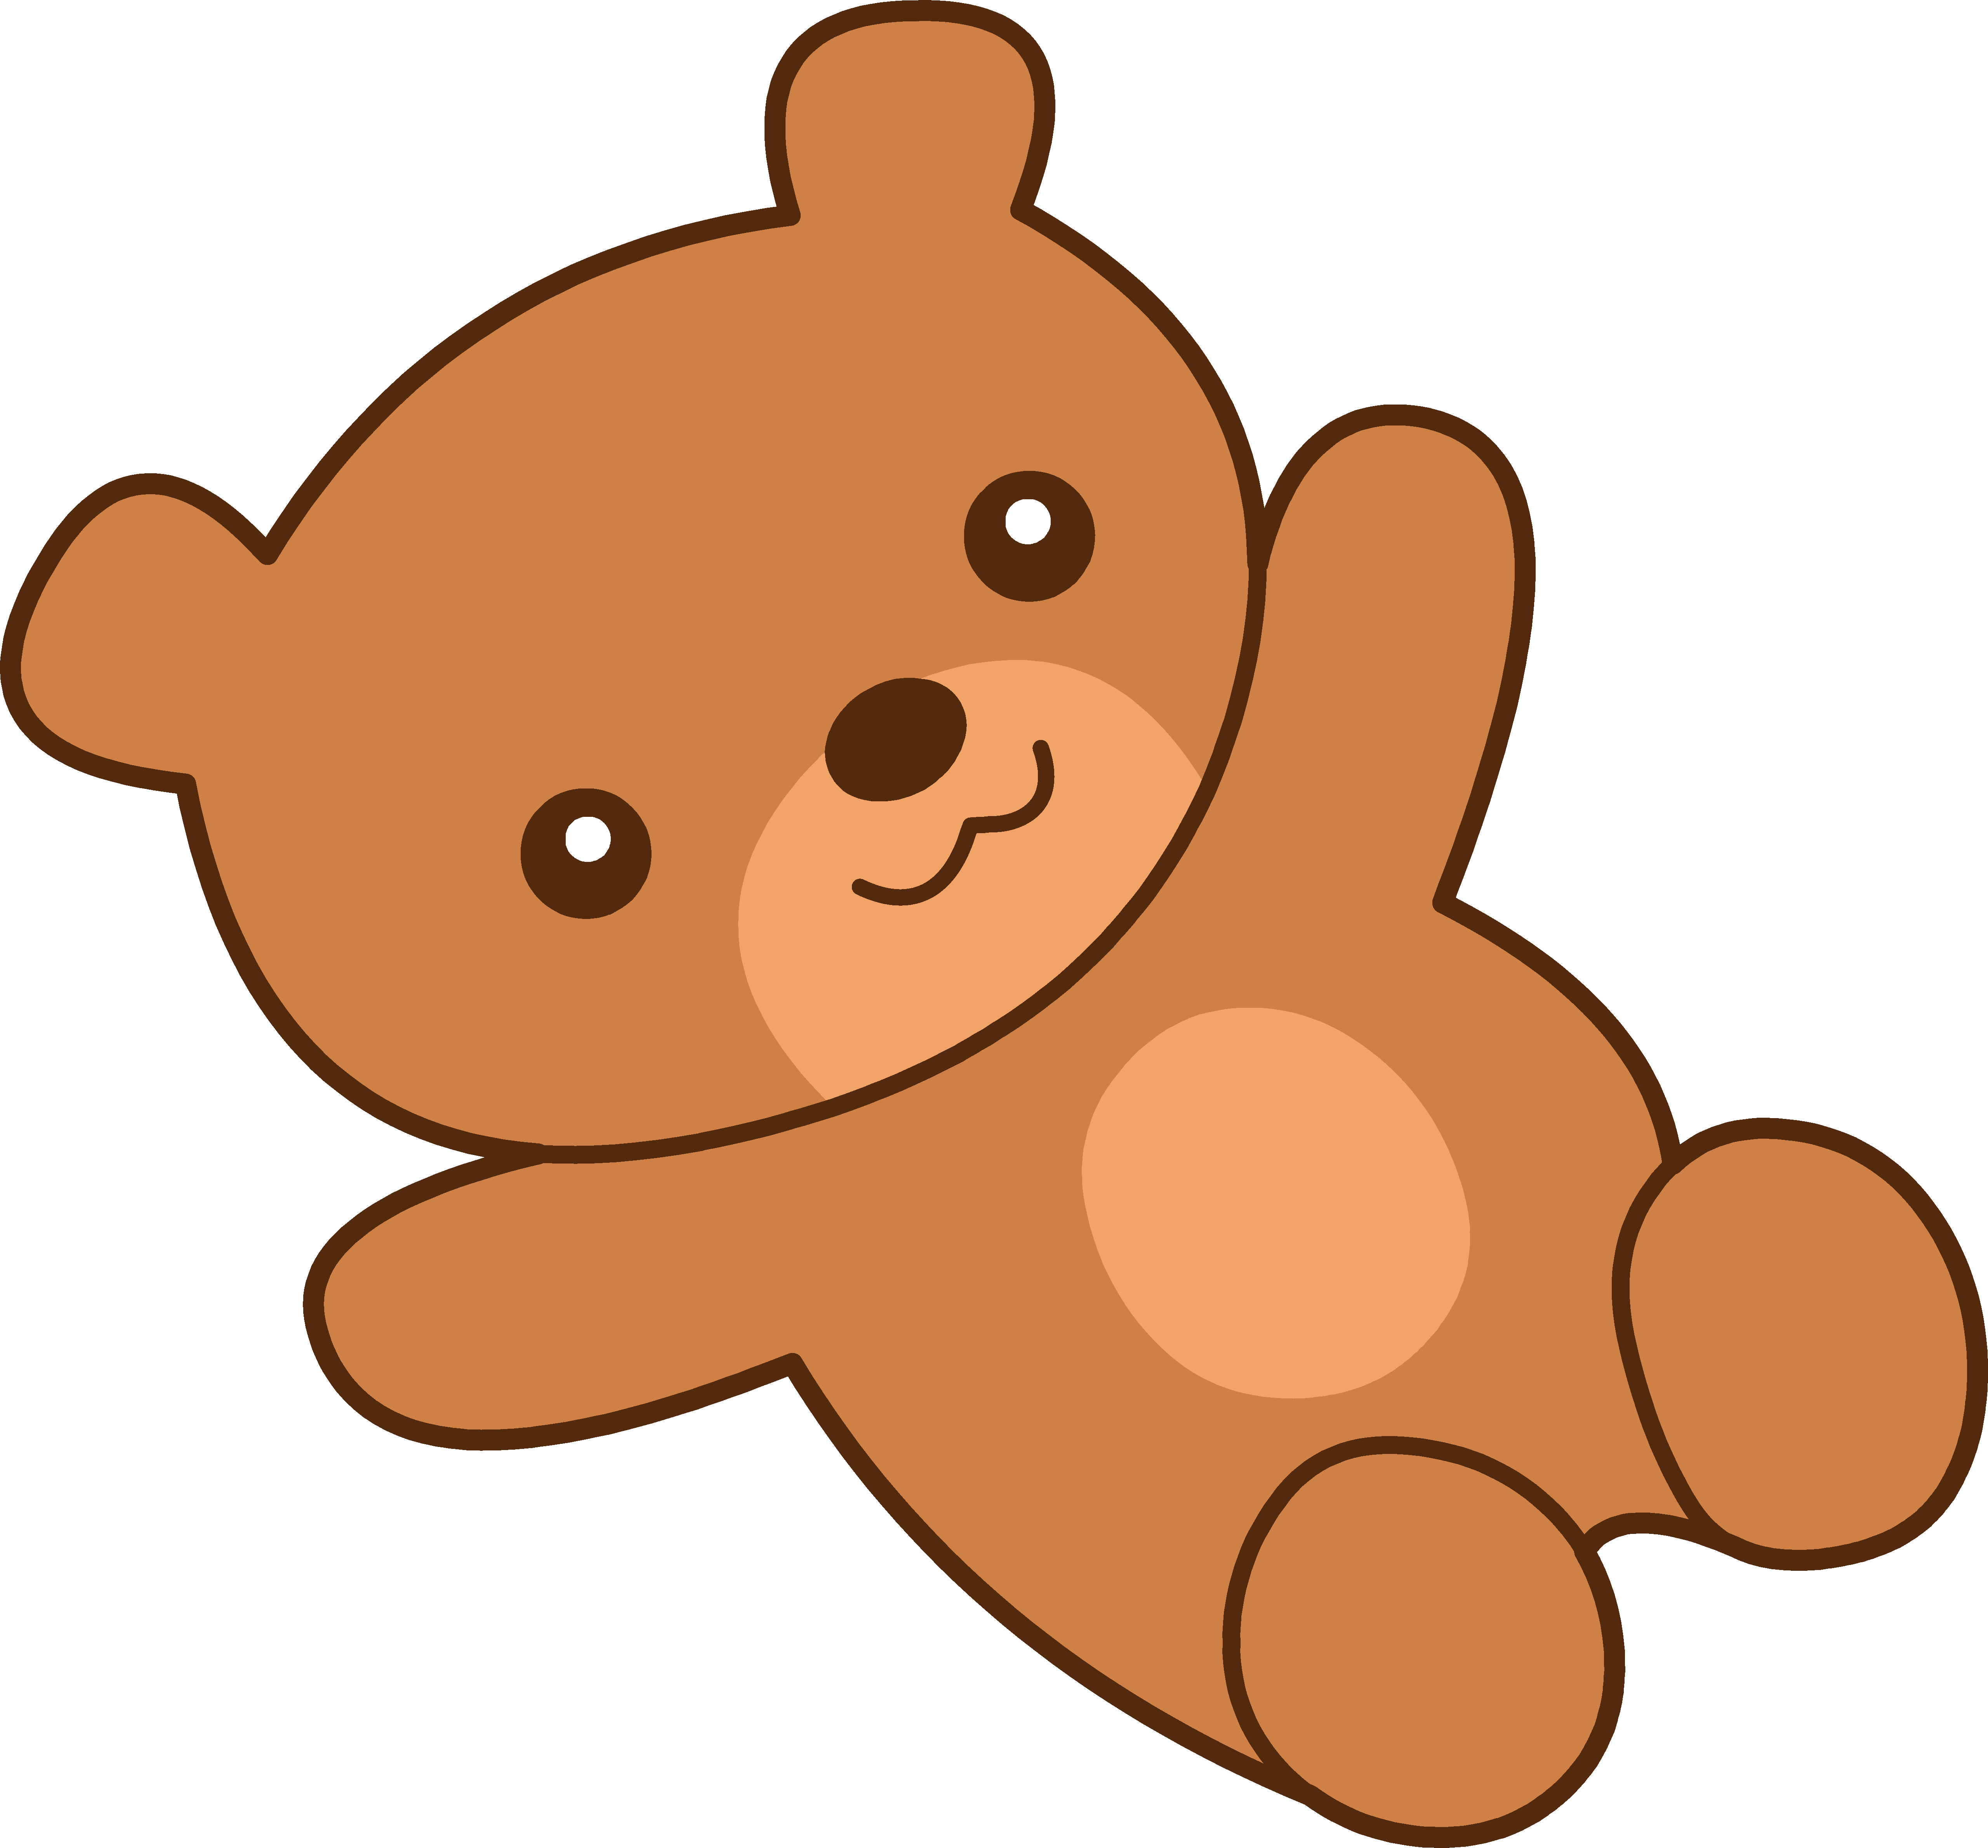 Cute brown teddy bear clipart free clip art png